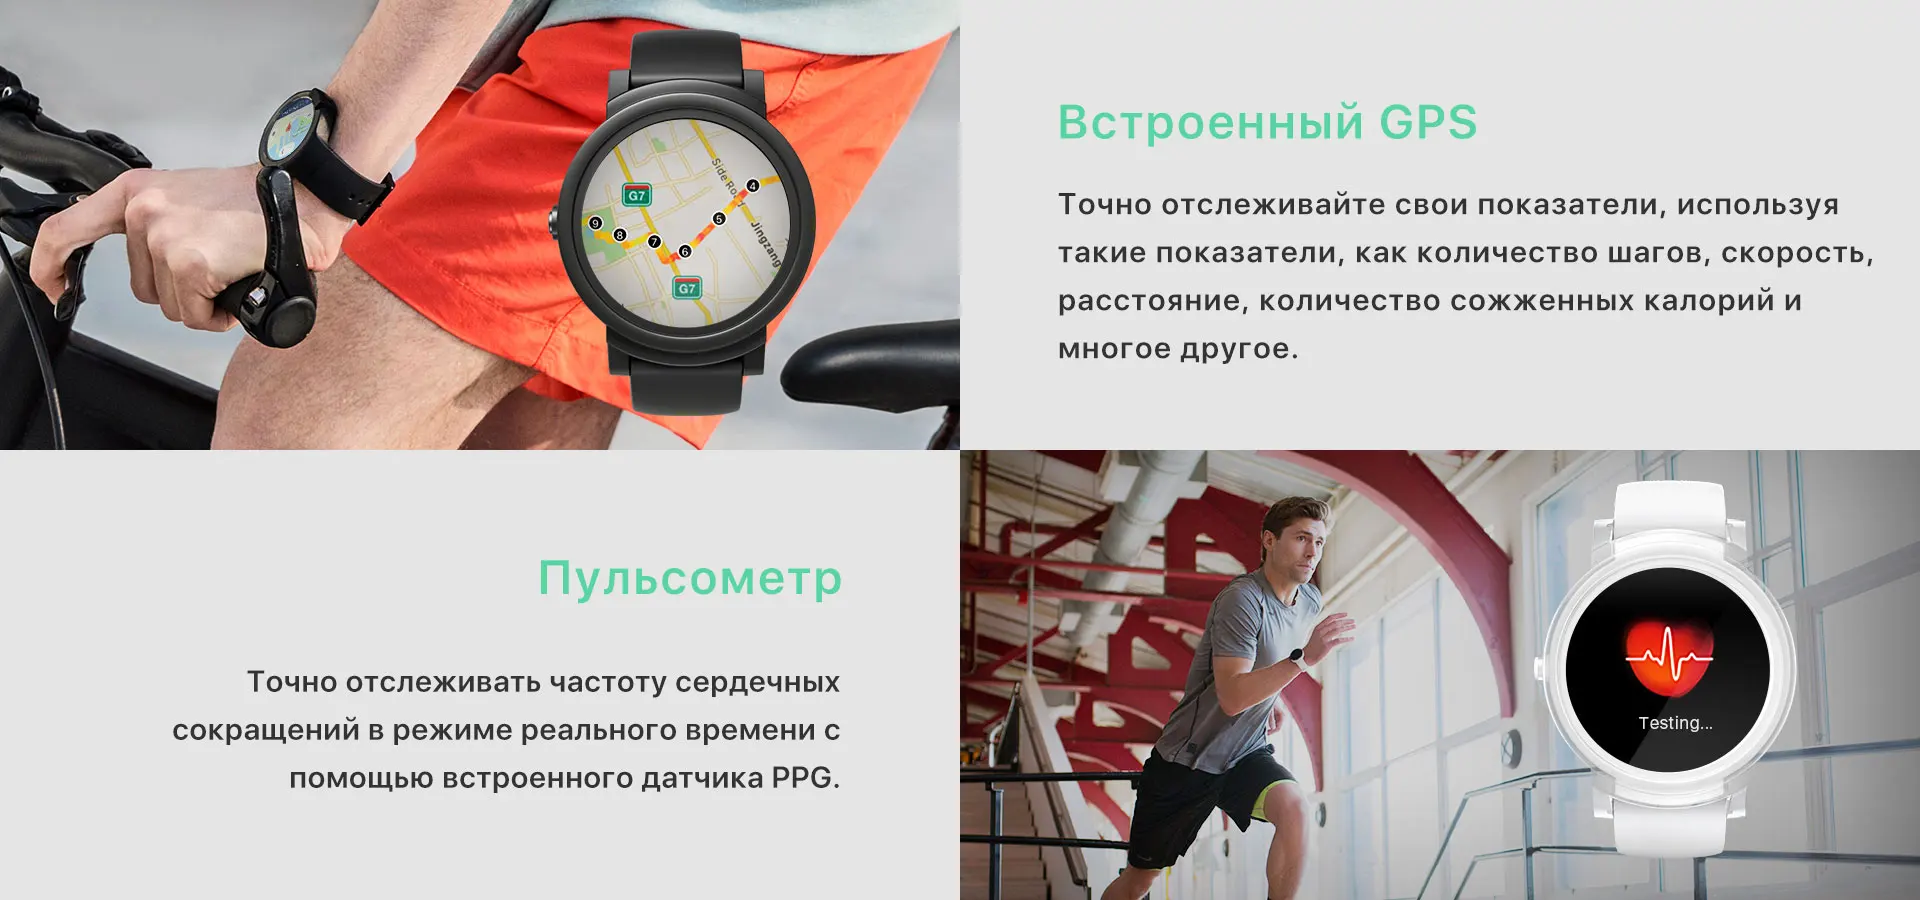 TicWatch E белые Смарт-часы Bluetooth умные часы с gps Android и iOS совместимые спортивные часы IP67 Mobvoi оригинальные